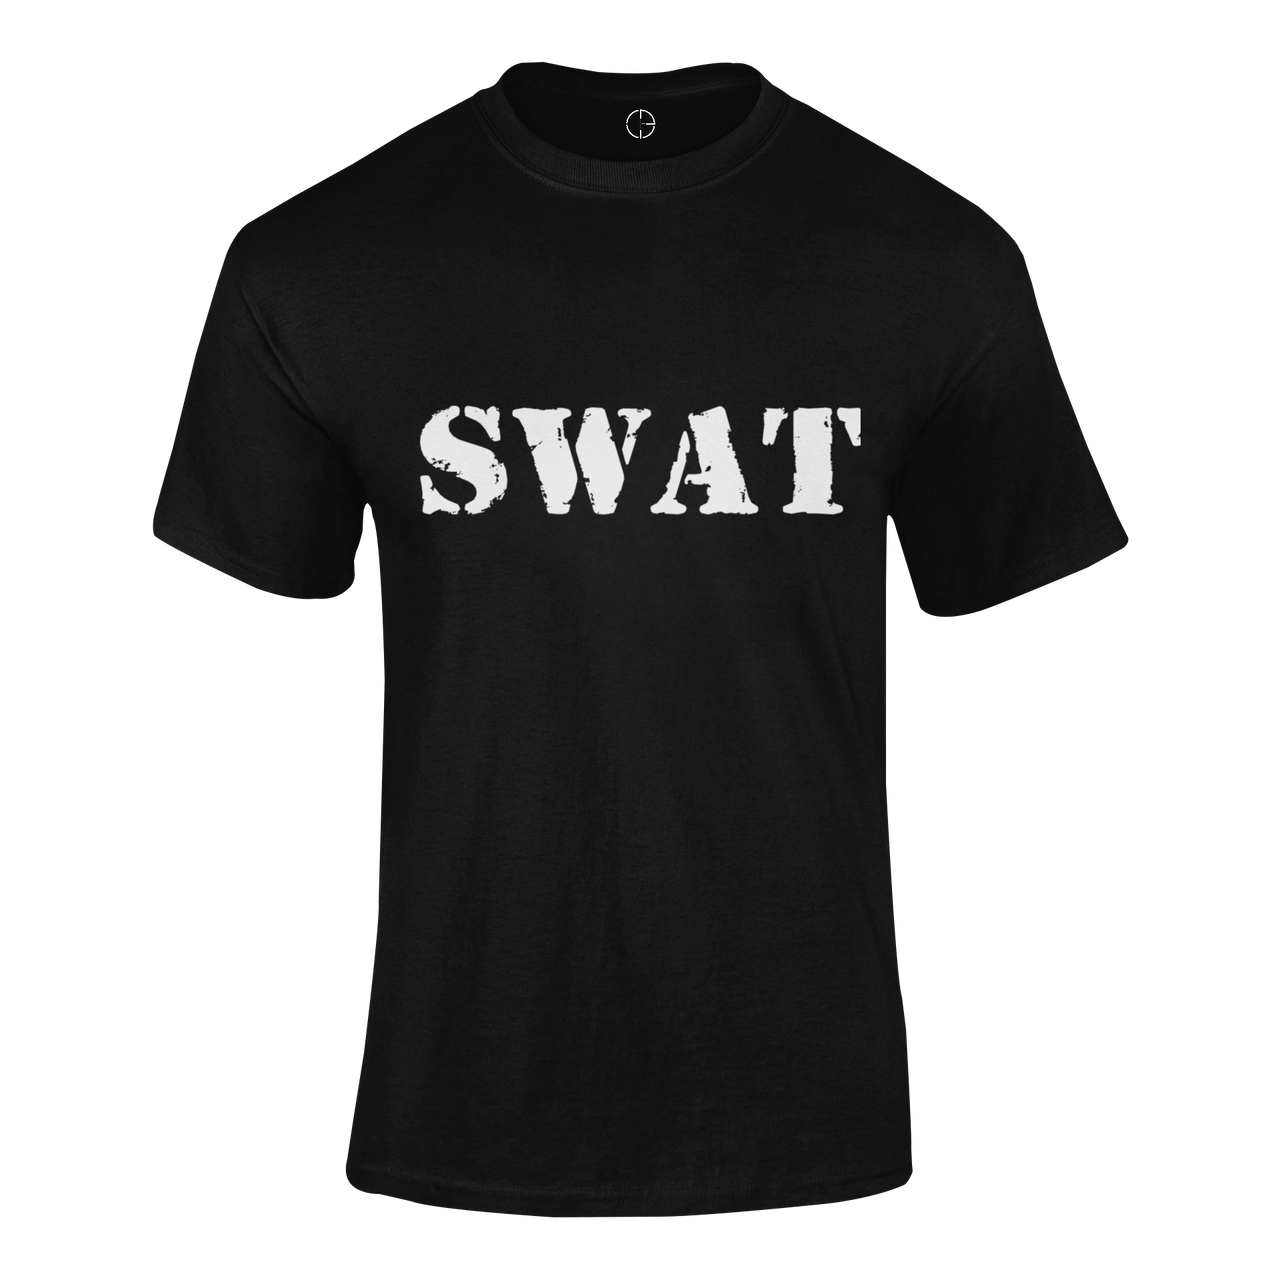 Military T-shirt - SWAT (Men)